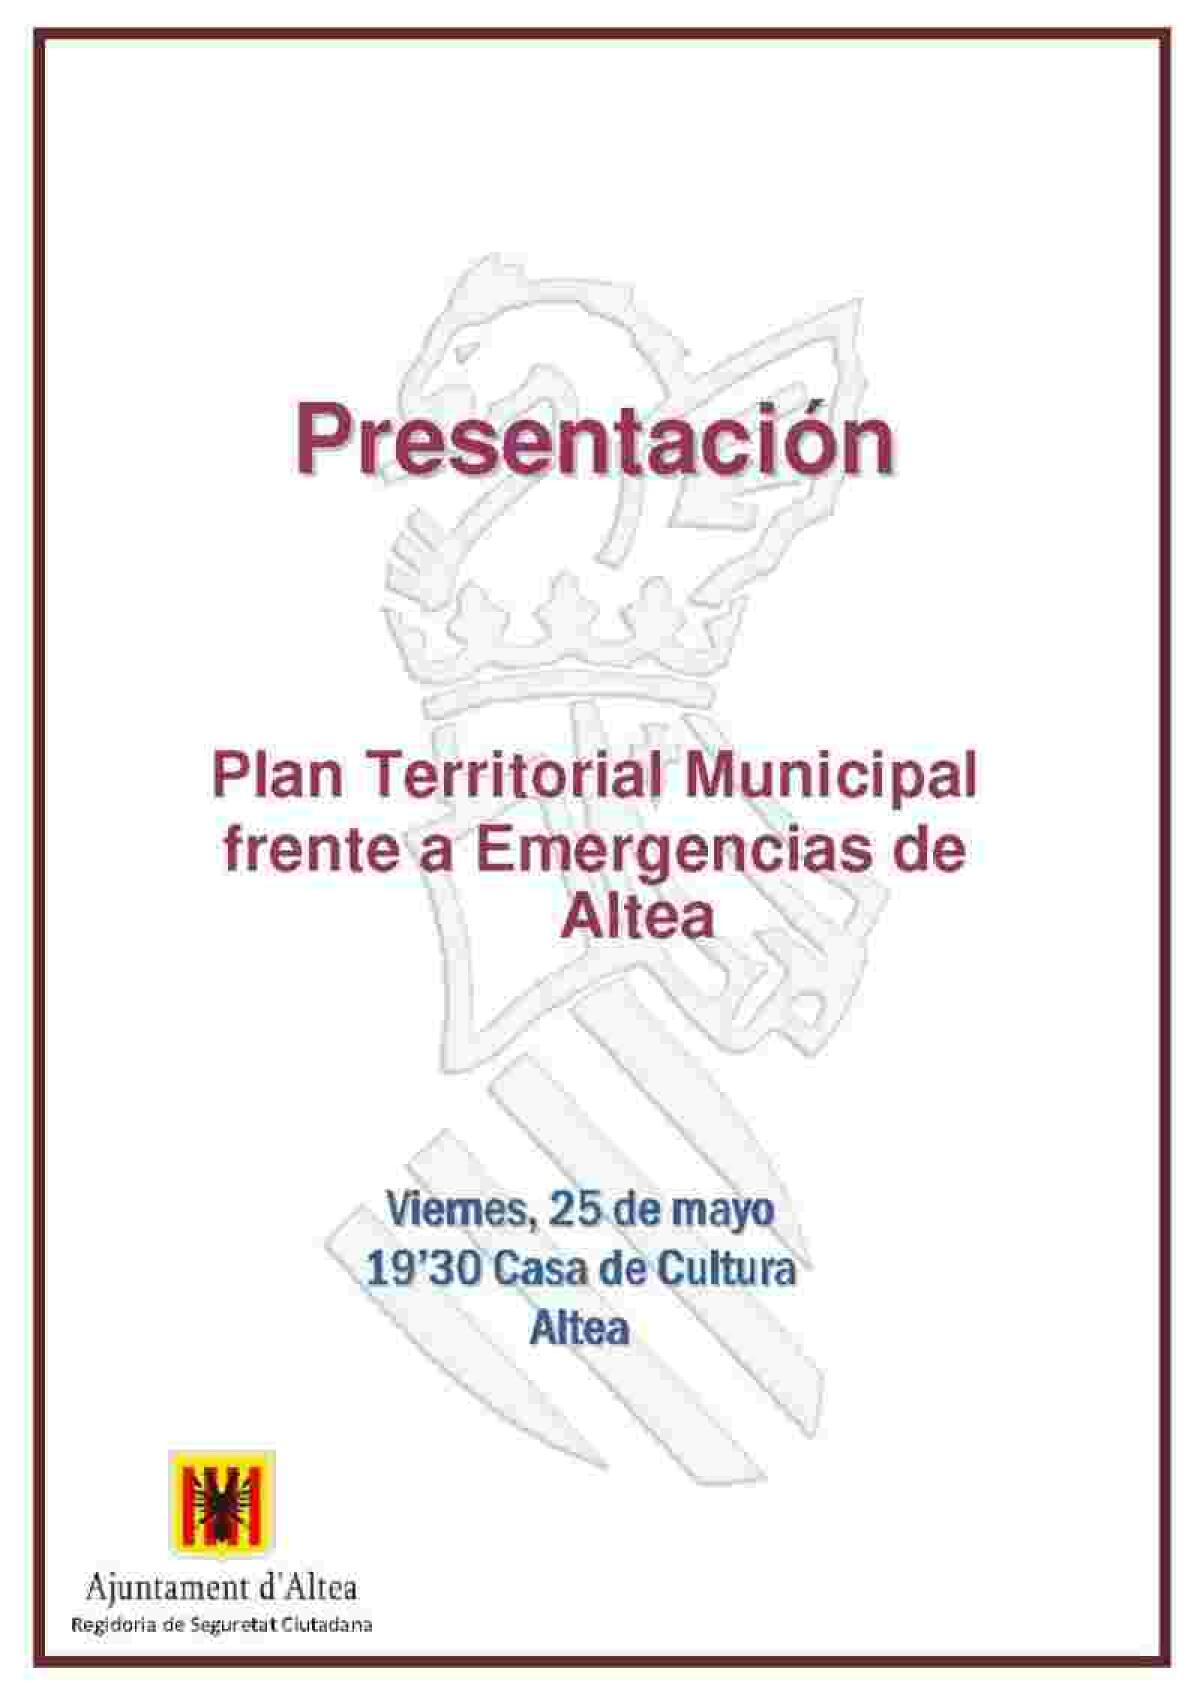 Altea · Seguridad Ciudadana invita a conocer el Plan Territorial Municipal frente a Emergencias